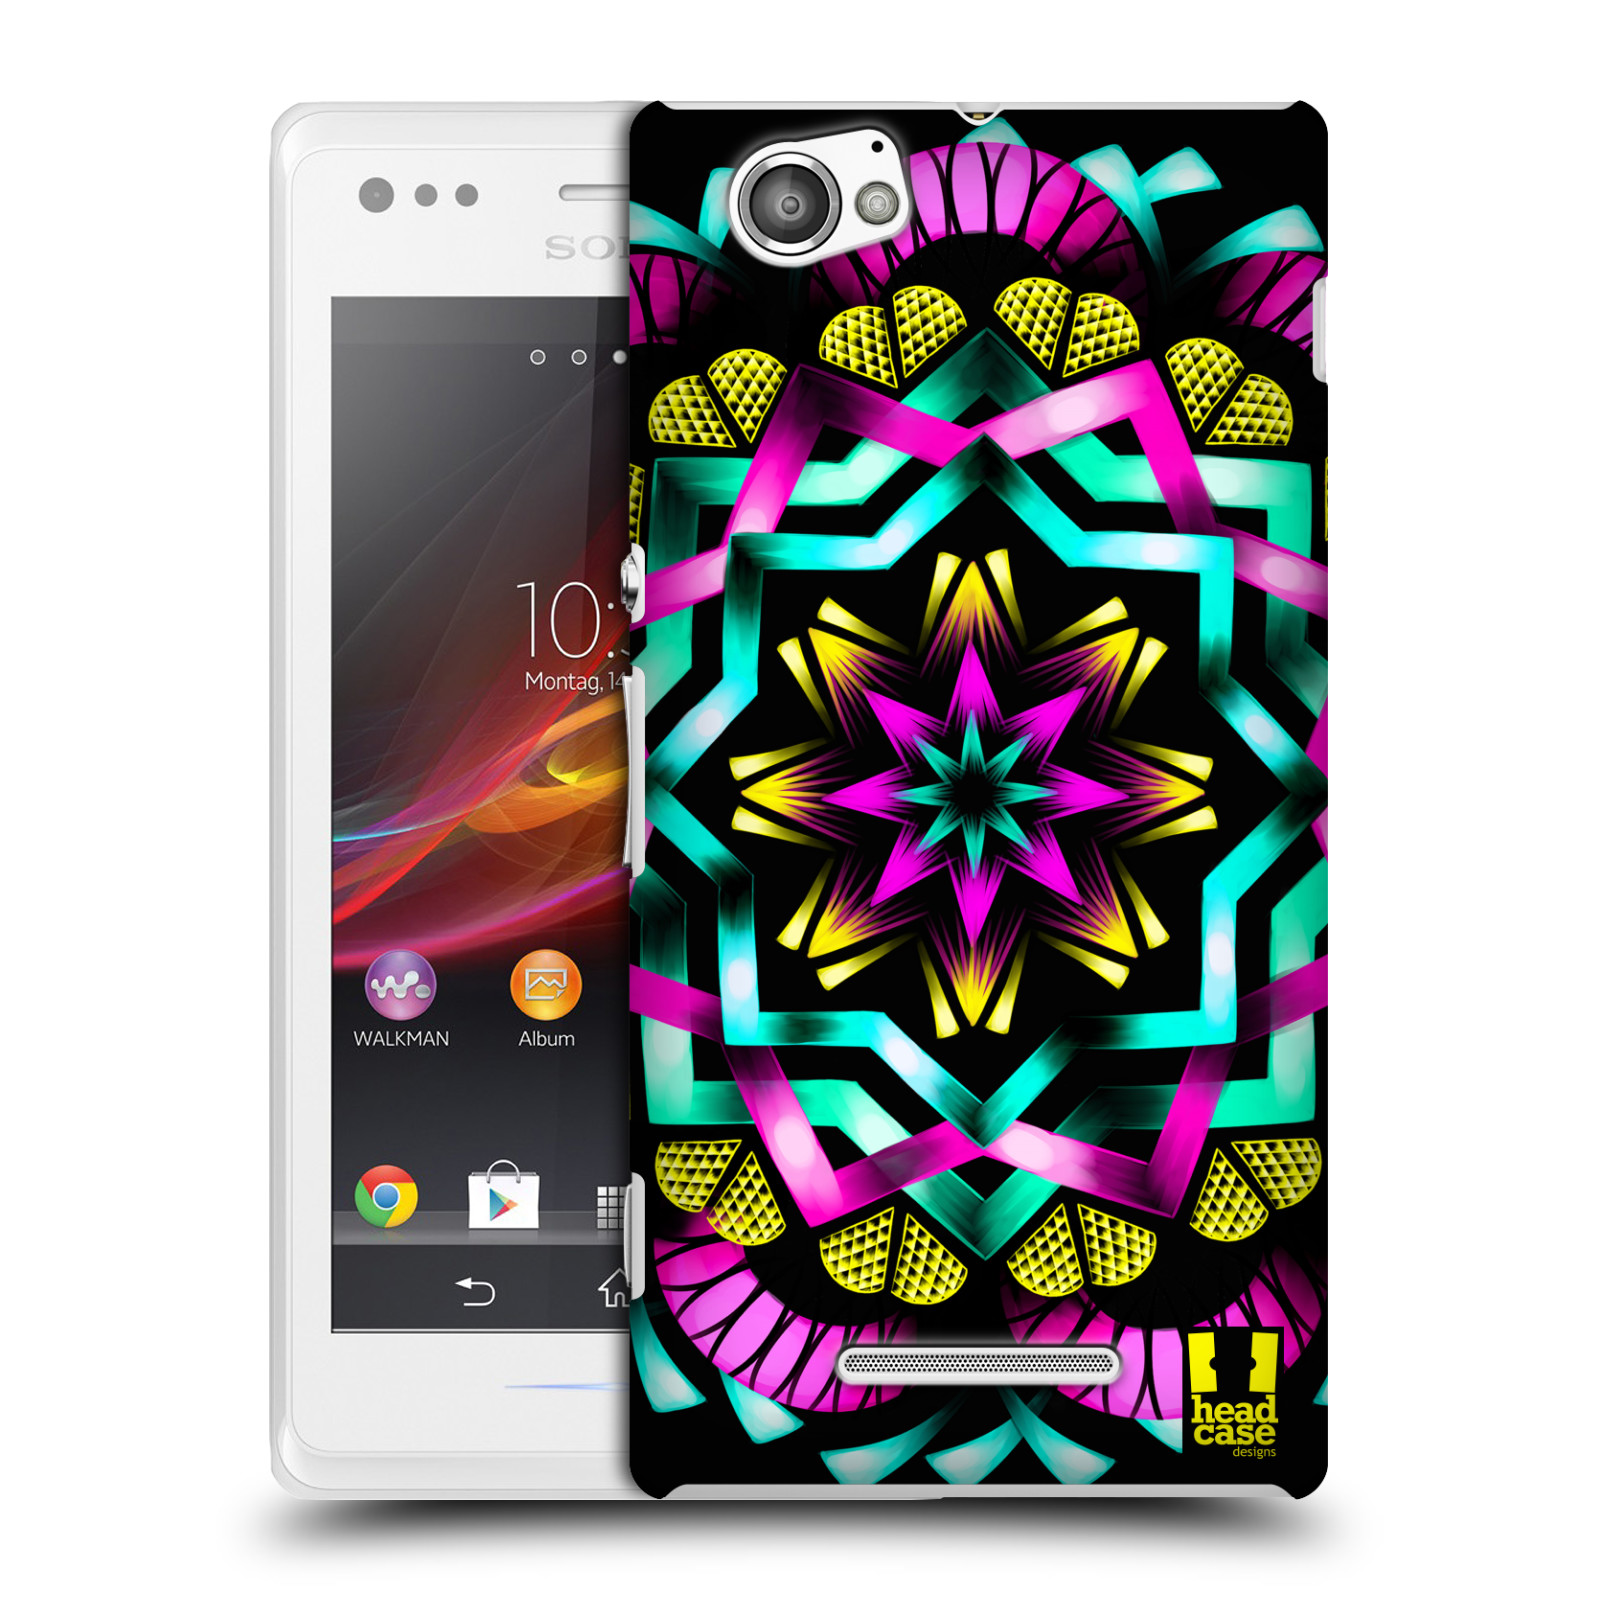 HEAD CASE plastový obal na mobil Sony Xperia M vzor Indie Mandala kaleidoskop barevný vzor SLUNCE